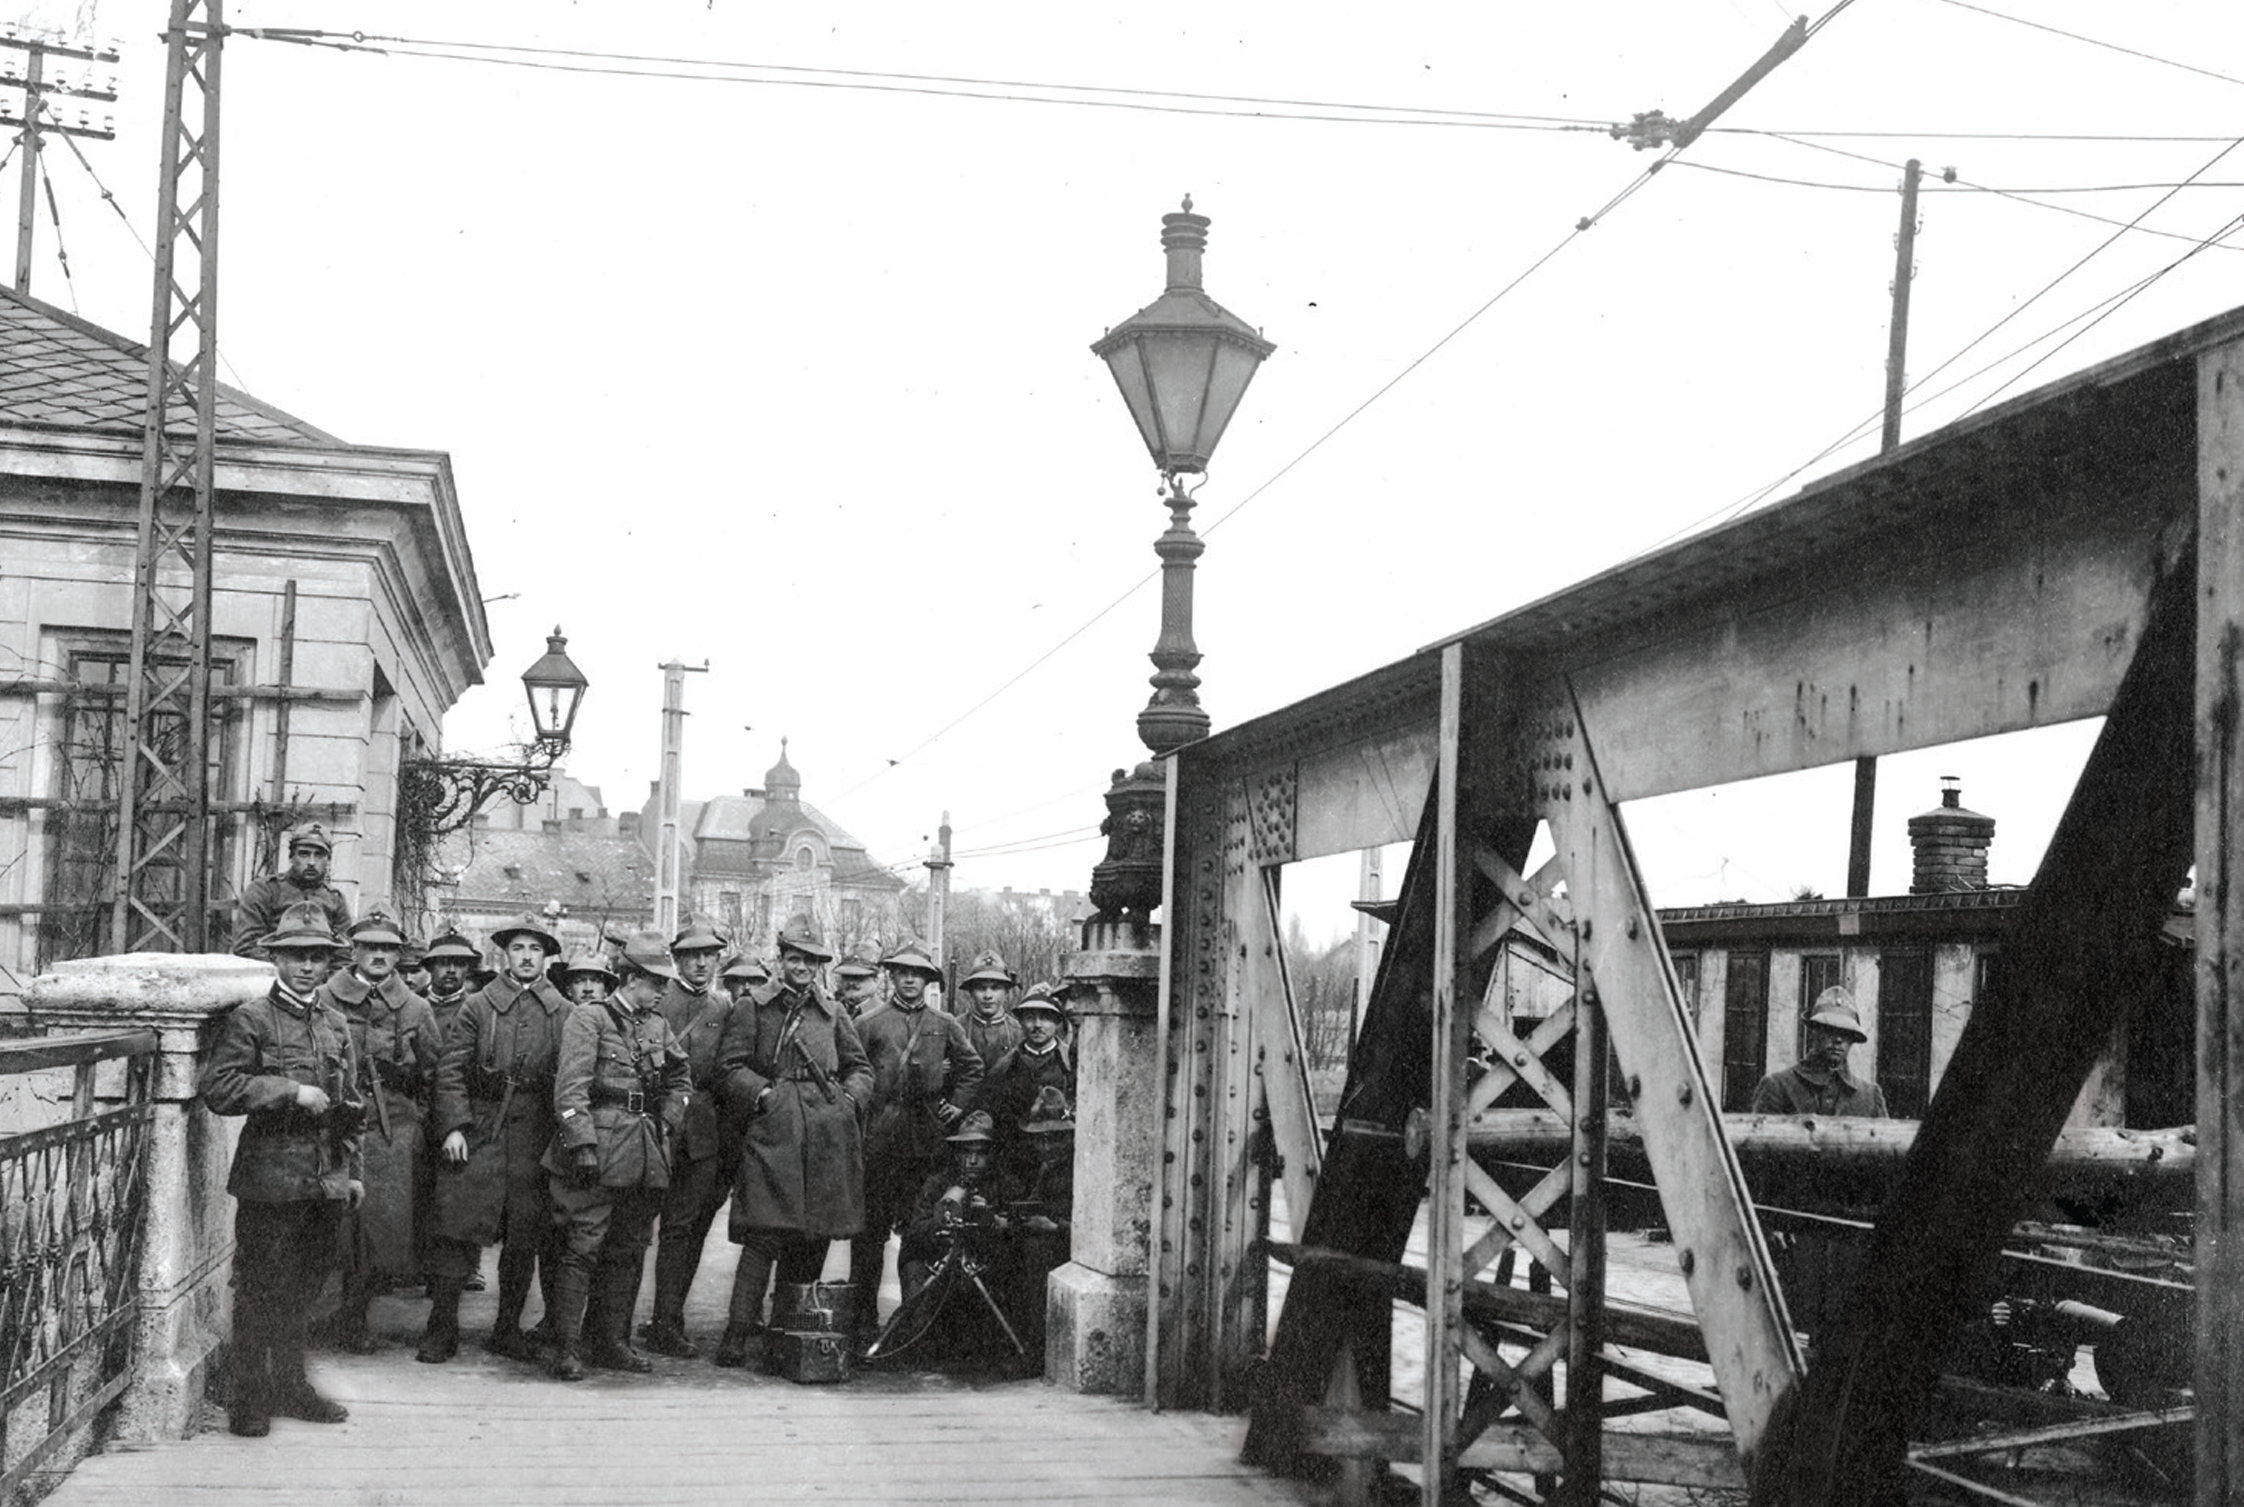 Czechoslovak Legion in Bratislava